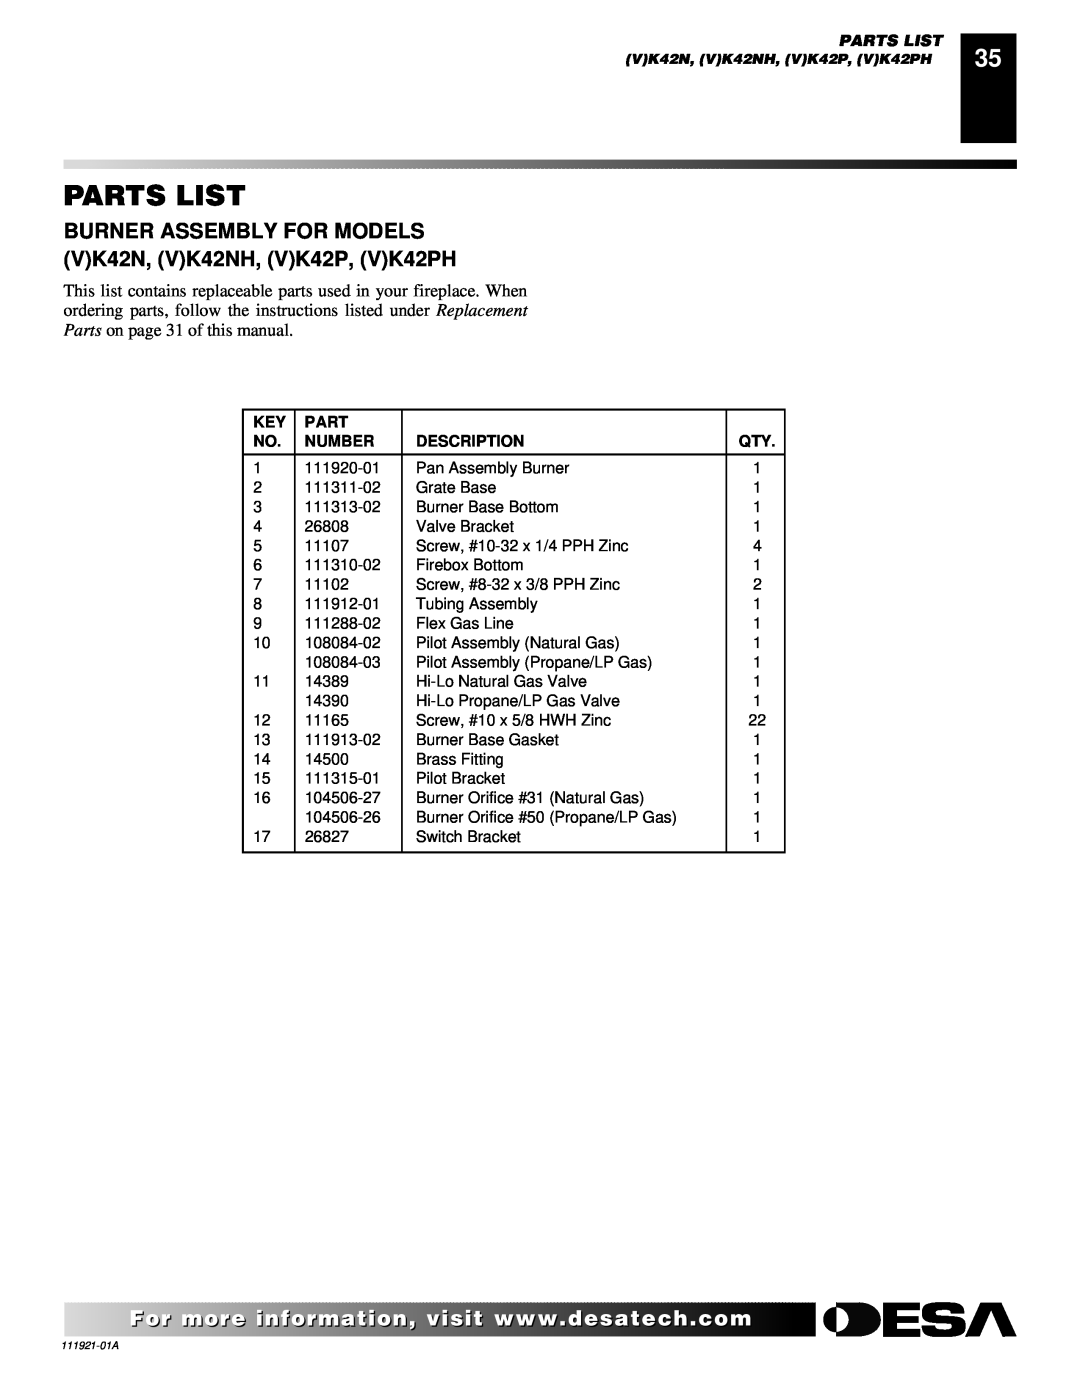 Desa (V)K42N installation manual Parts List, Number, Description 